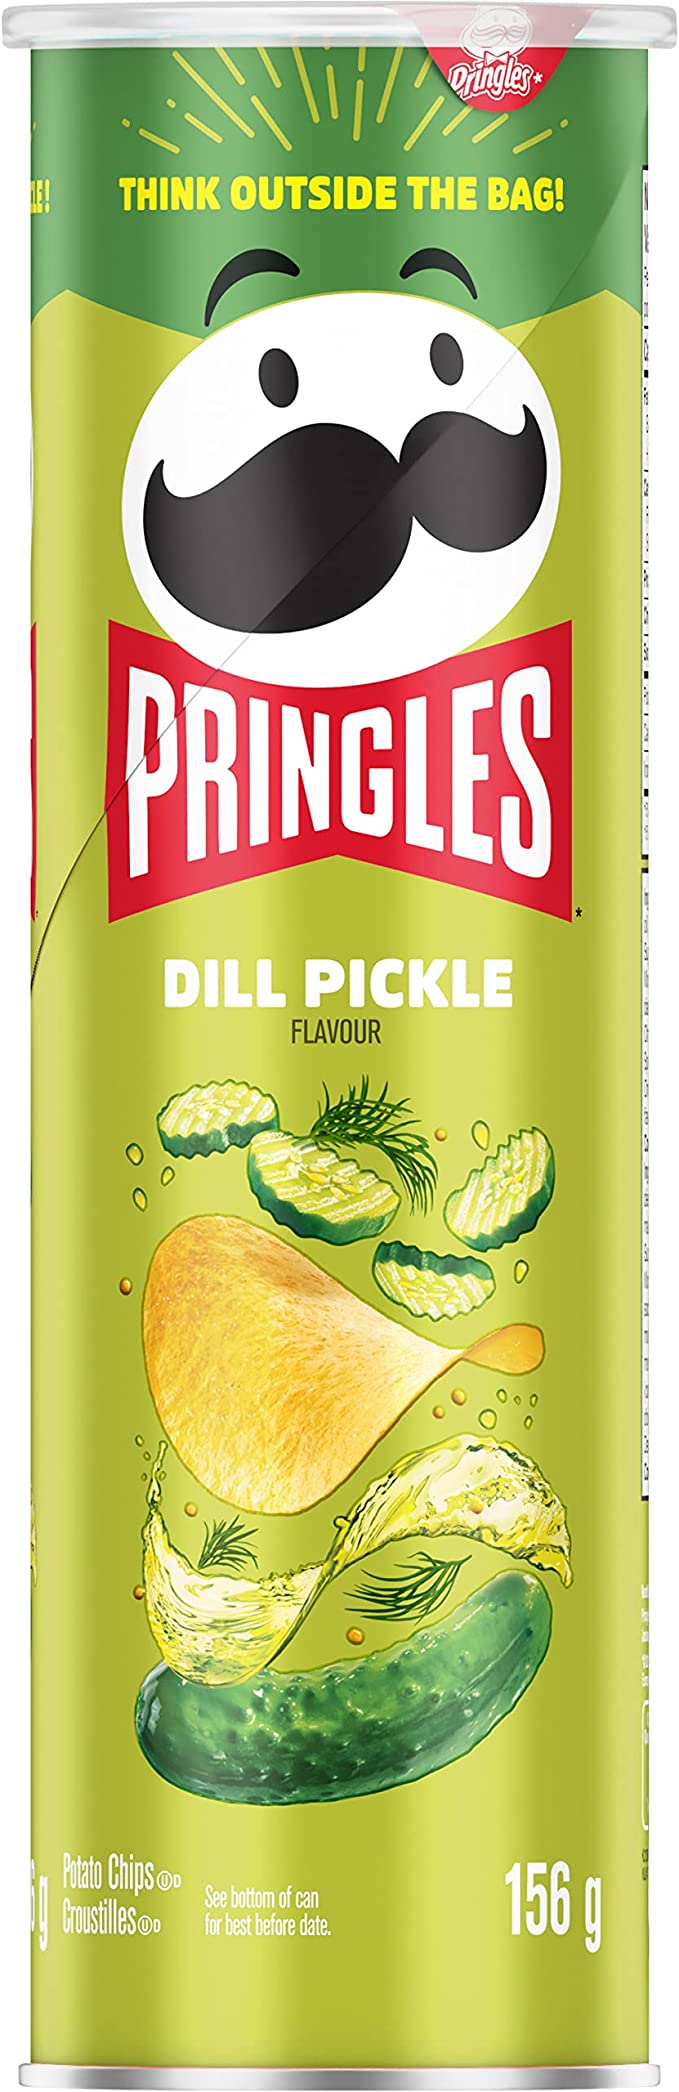 Pringles Dill Pickle Chips, 156 Grams